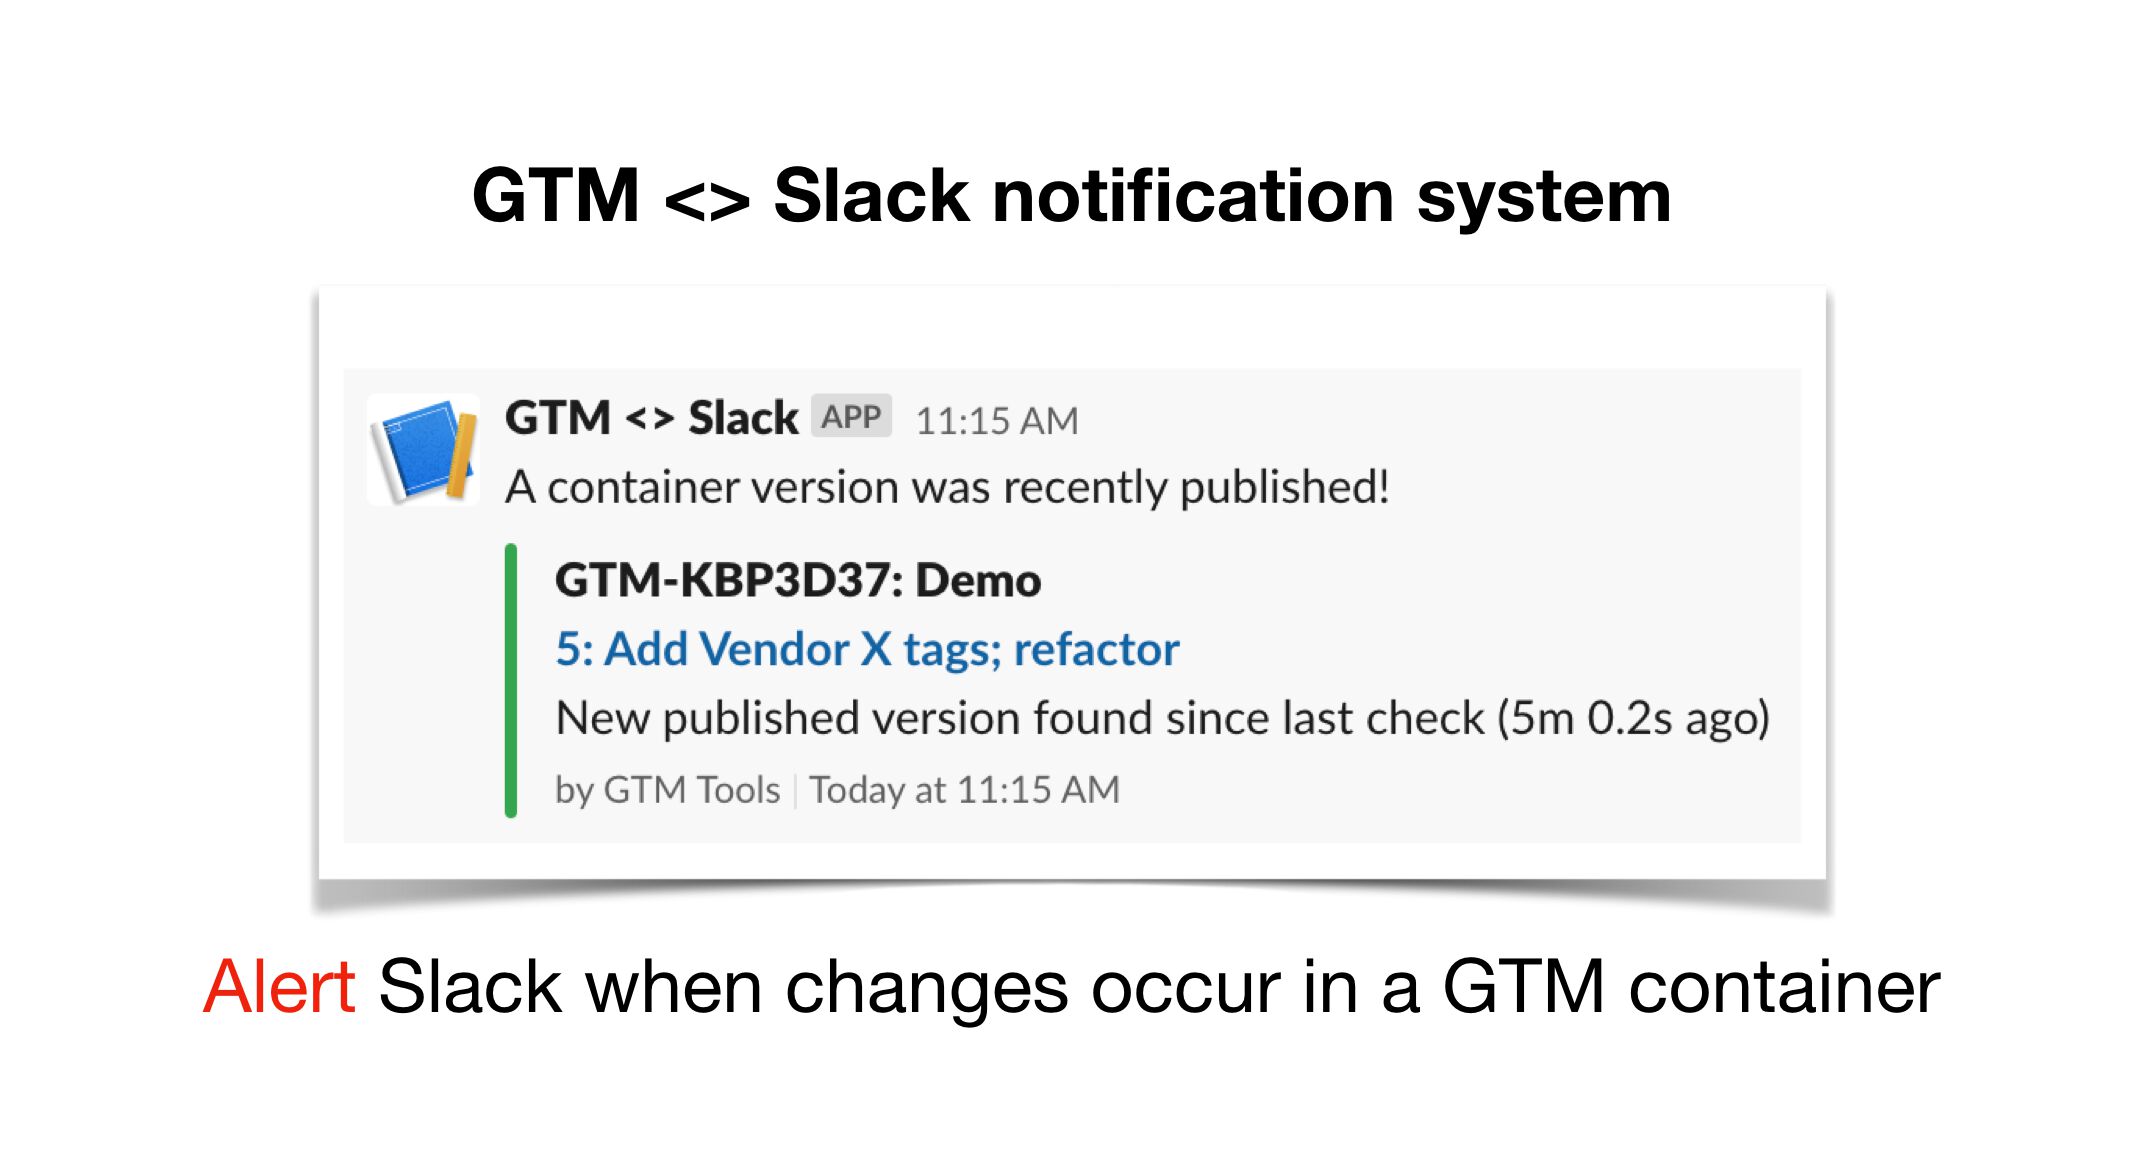 Image de d'implantation de code GTM dans slack